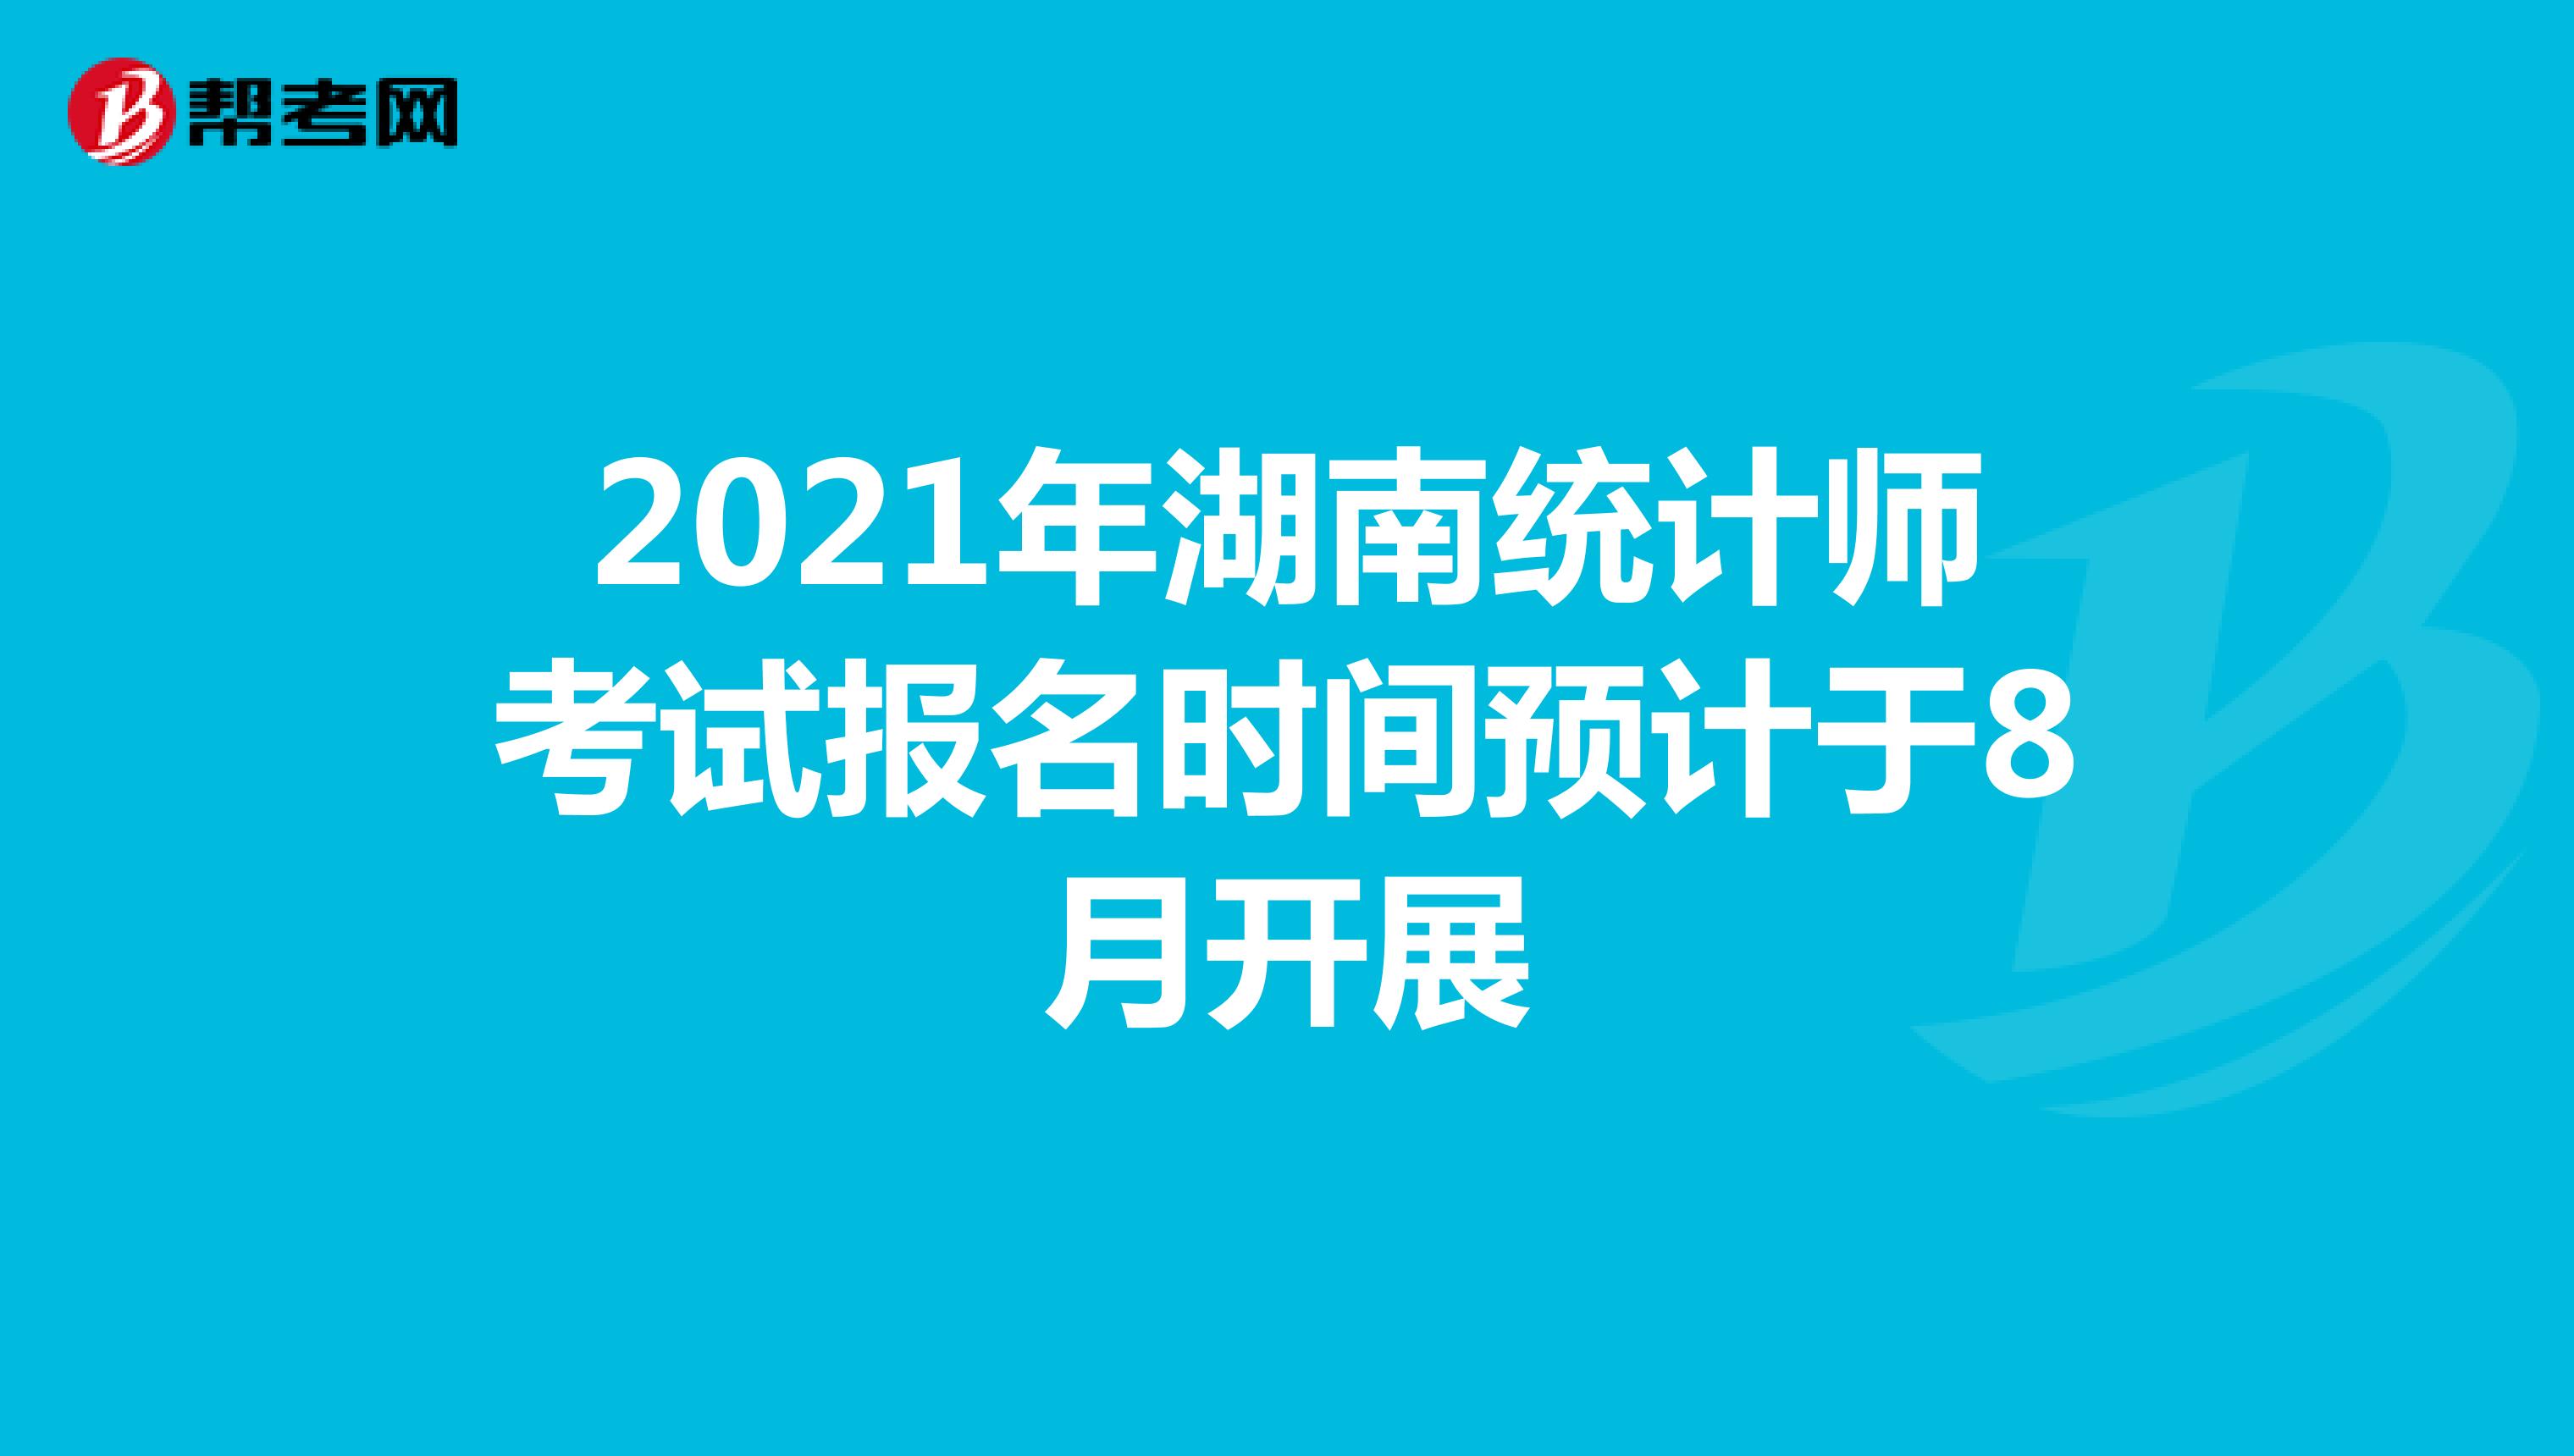 2021年湖南统计师考试报名时间预计于8月开展